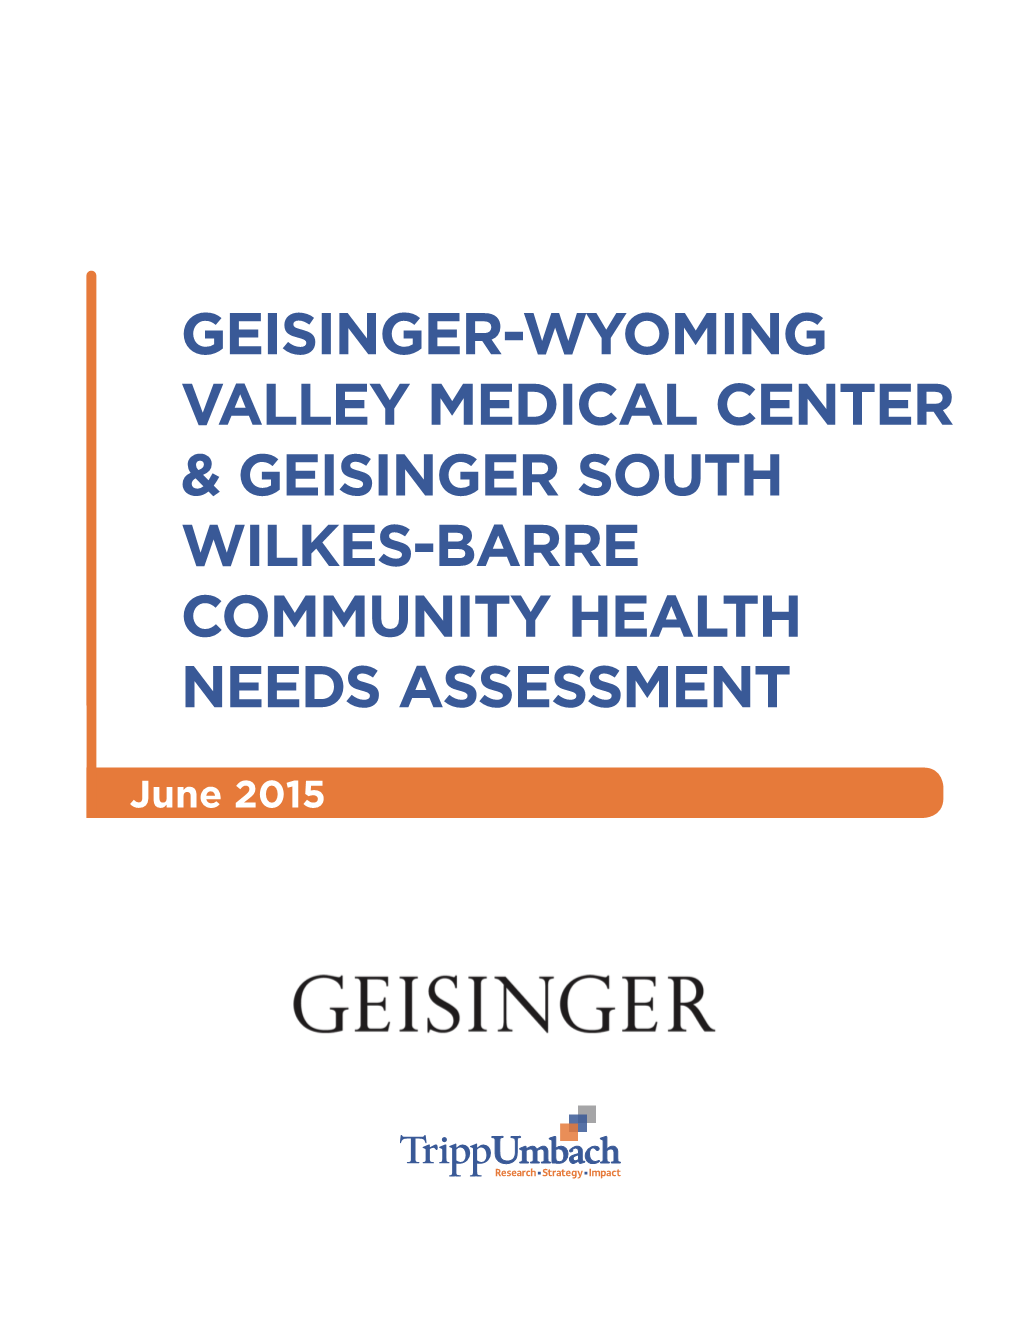 Geisinger-Wyoming Valley Medical Center & Geisinger South Wilkes